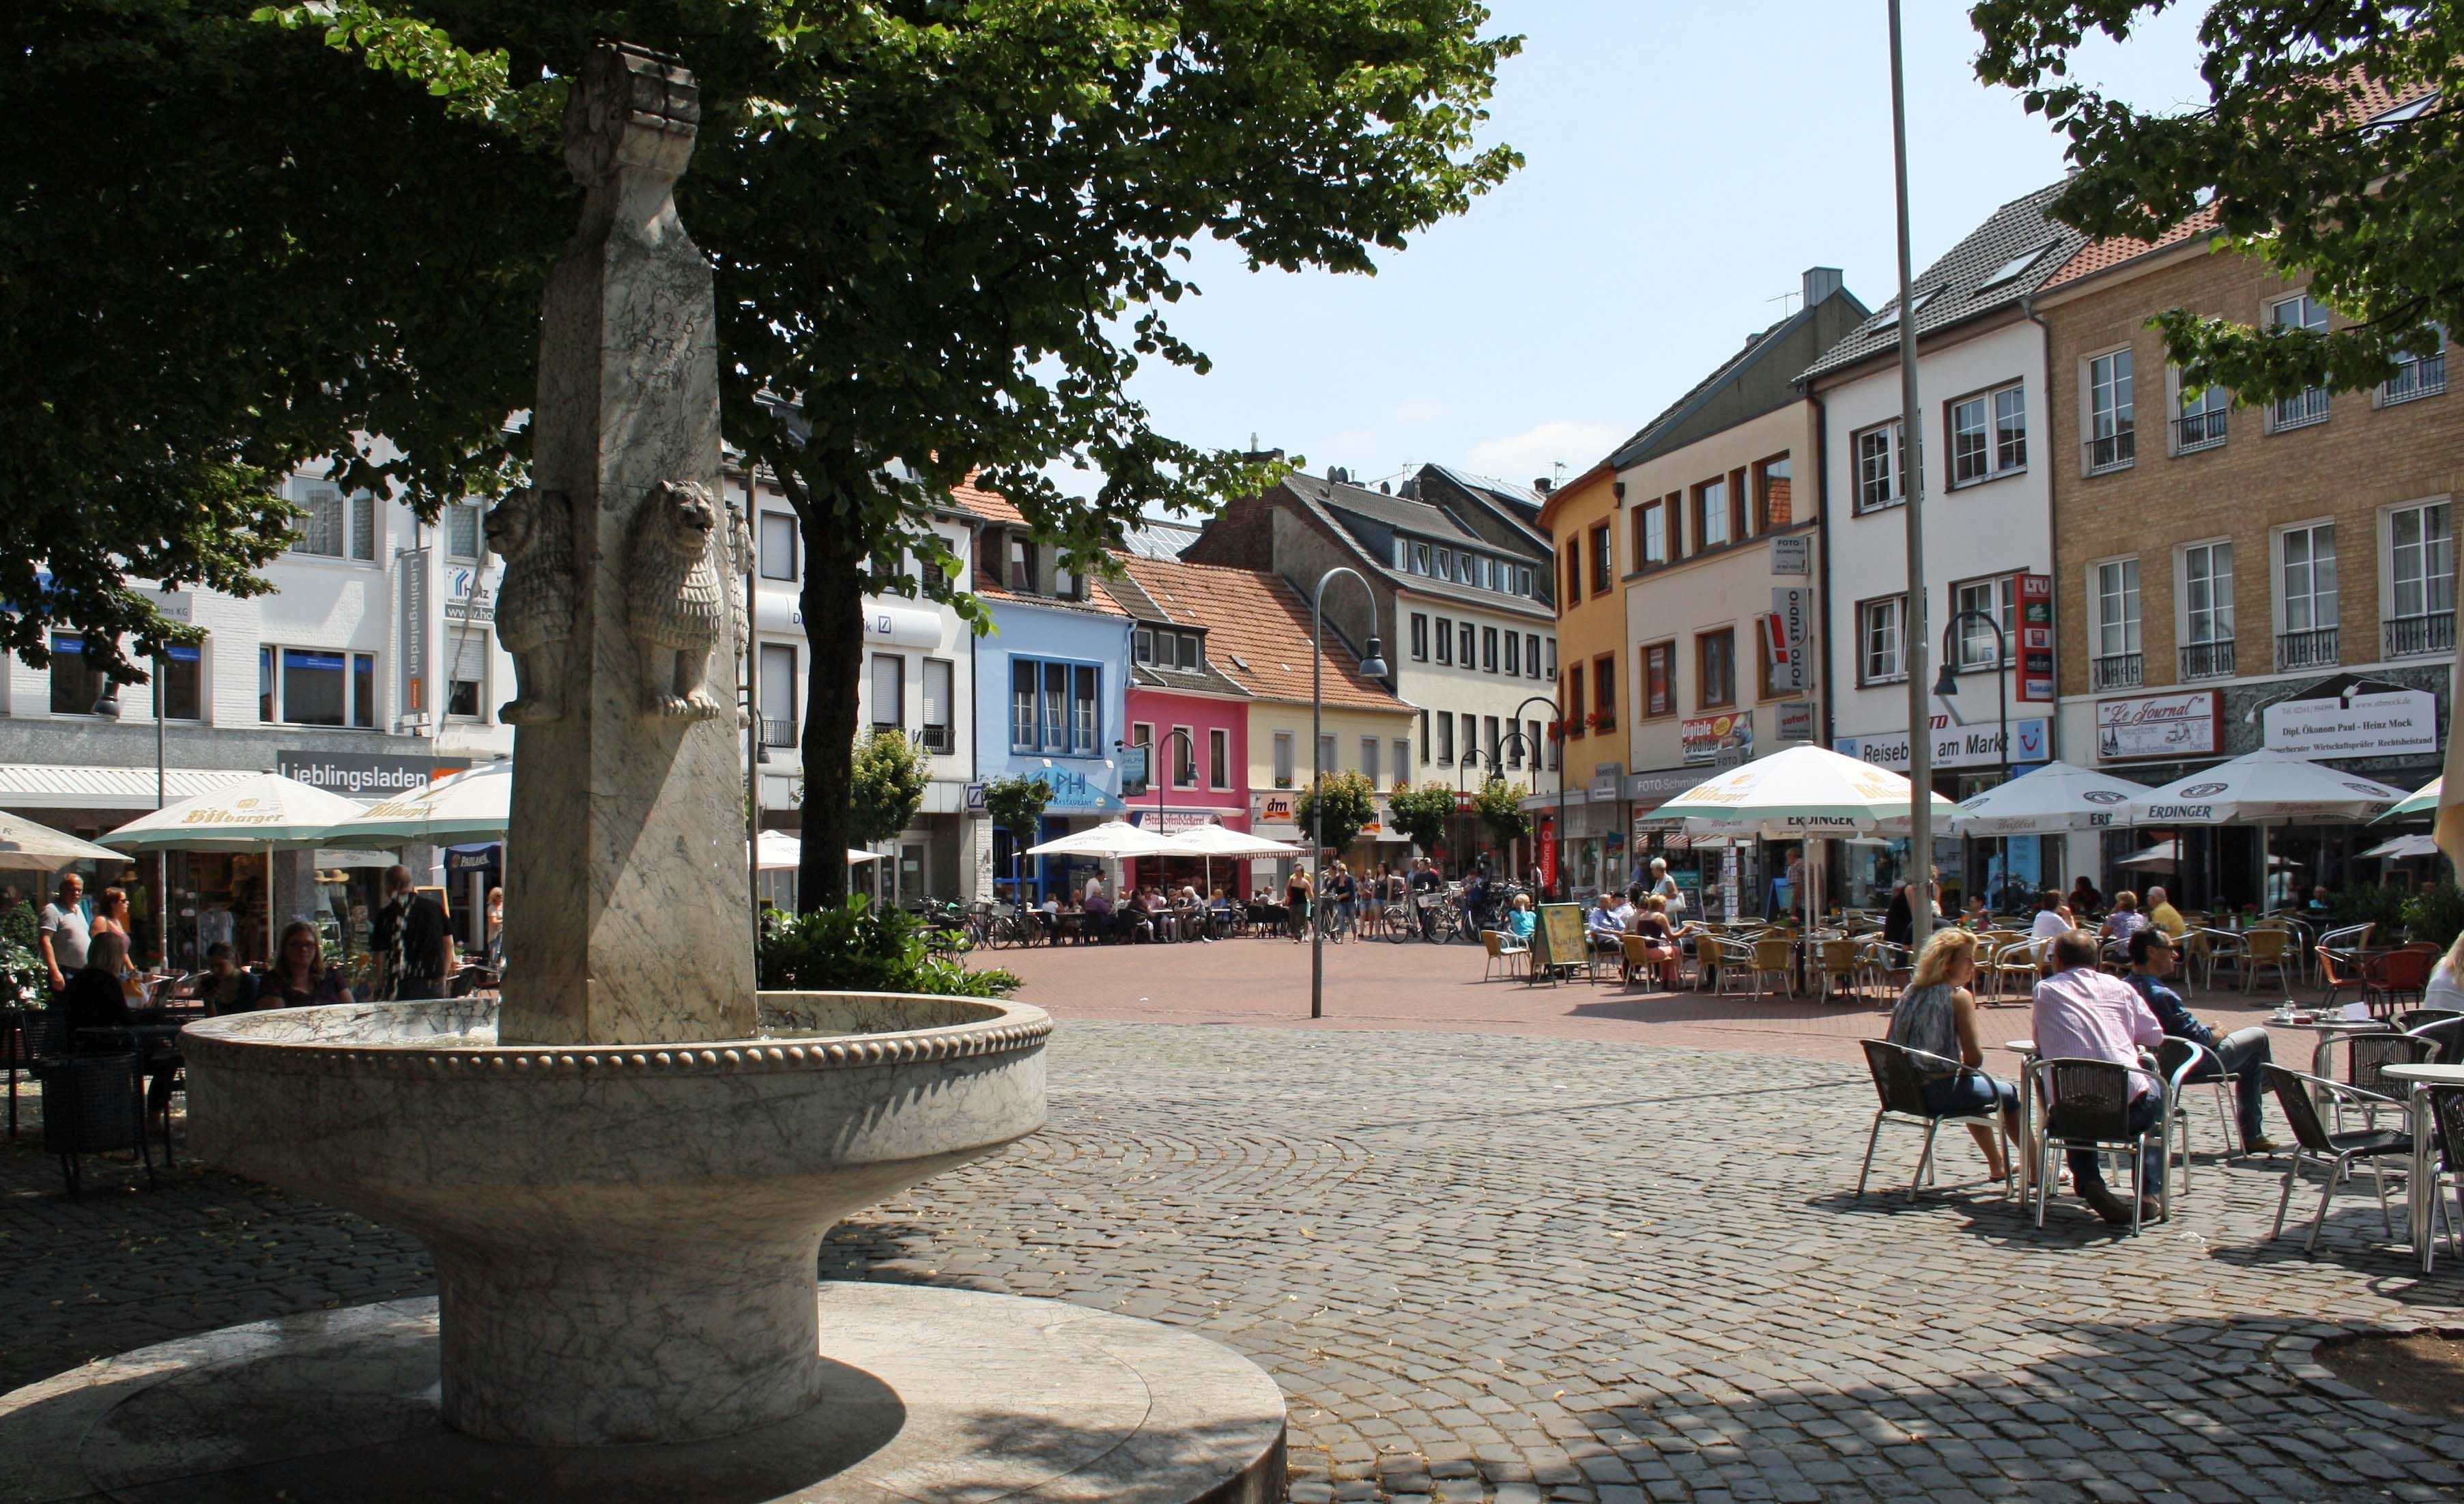 Der Stadtbrunnen am Markt